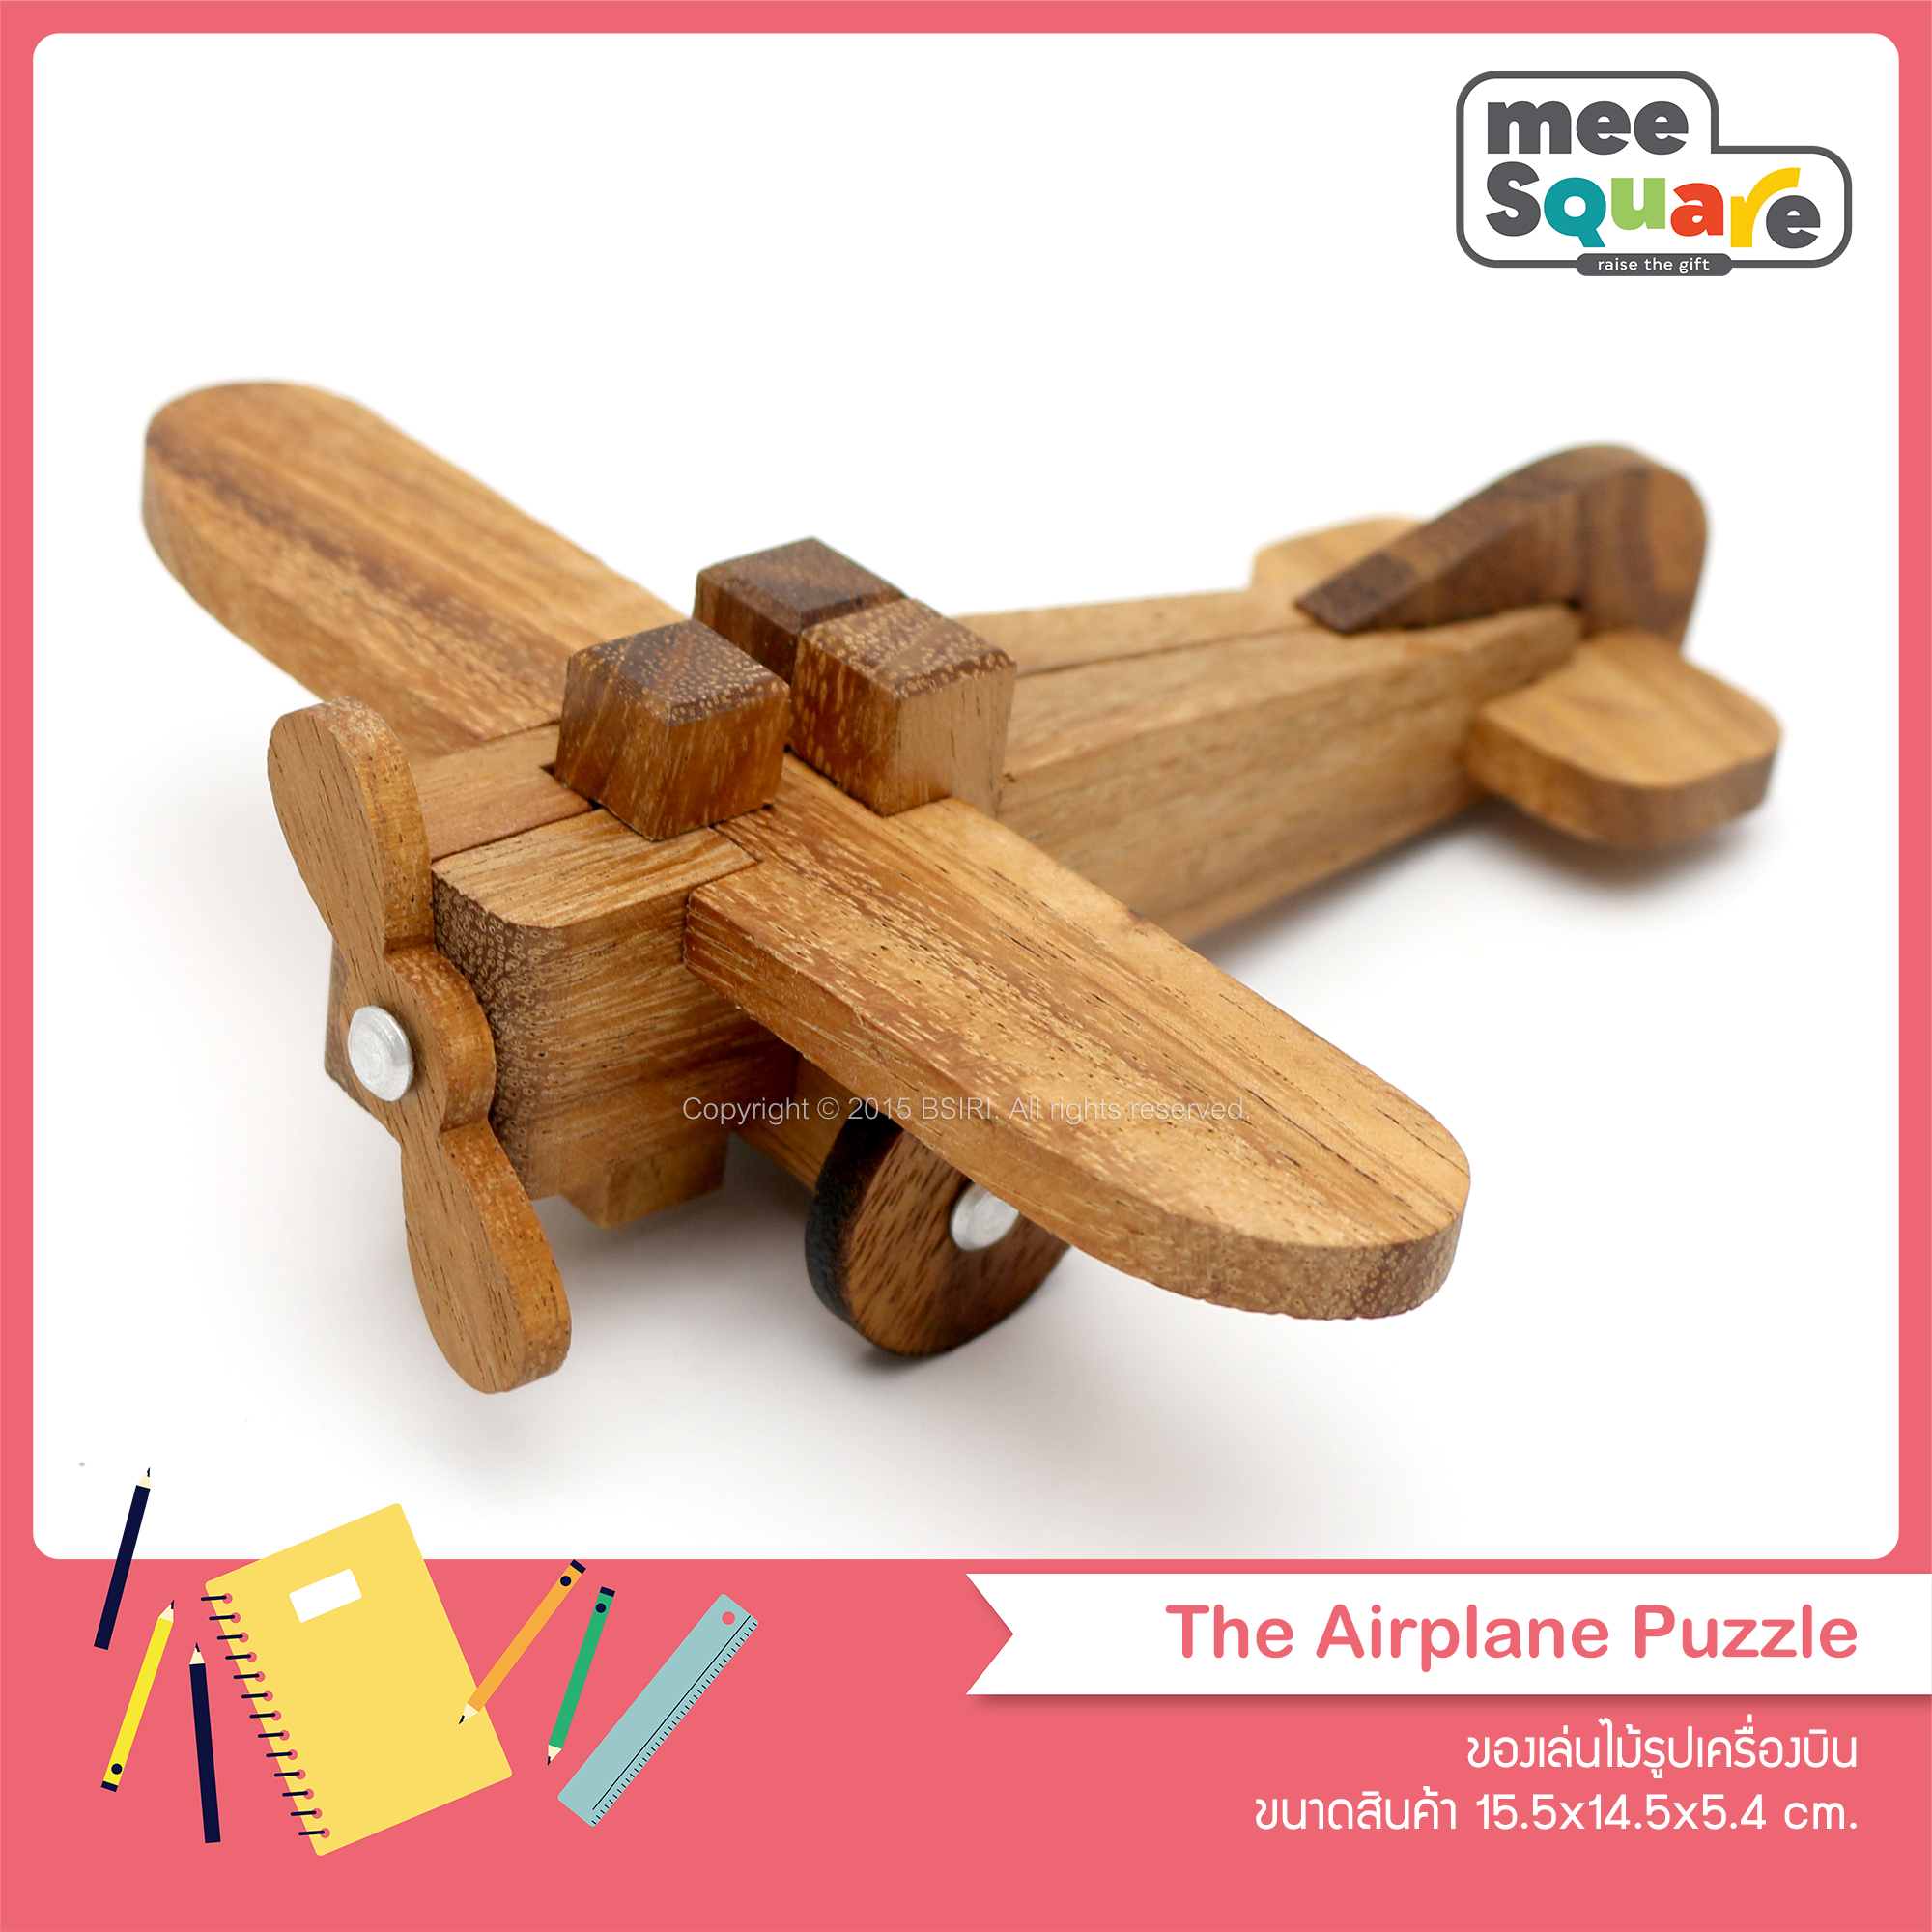 เกมส์ไม้ ของเล่นไม้รูปเครื่องบิน เกมส์บล็อคไม้ เกมส์ตัวต่อไม้ เกมส์ไม้ต่อ ของเล่นไม้ เกมตัวต่อไม้ Airplane Puzzle Wooden